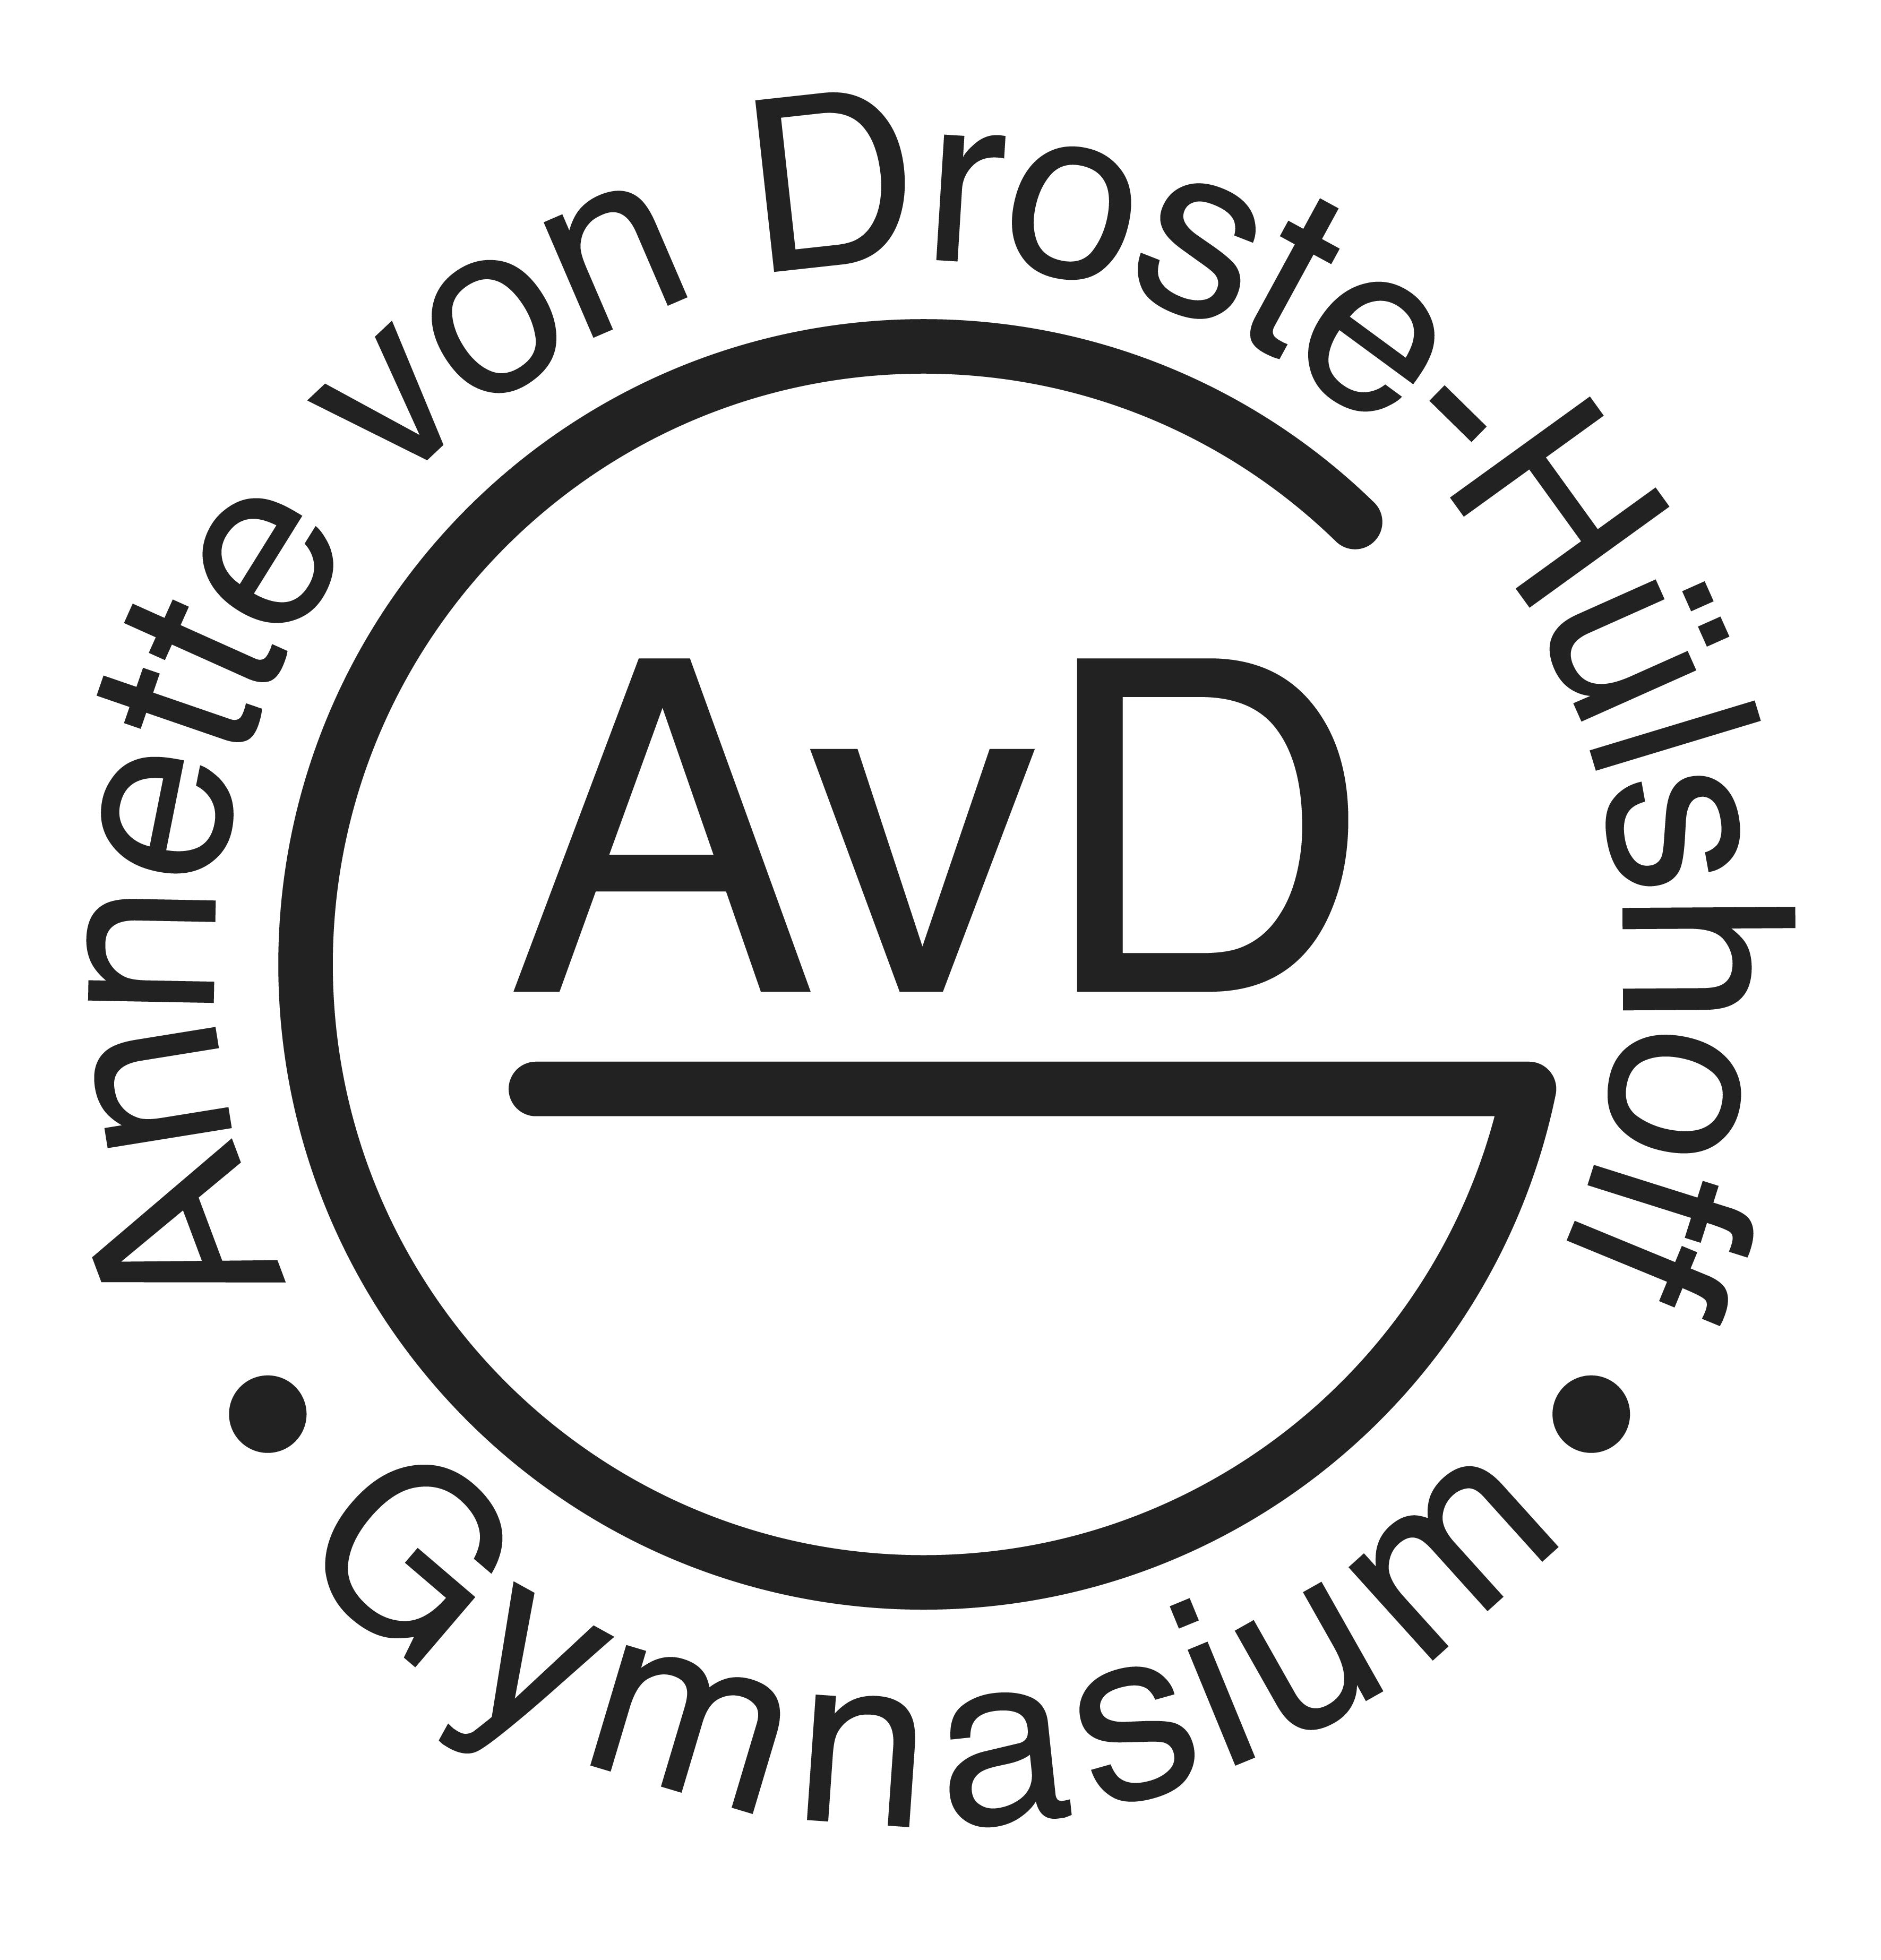 Annette-von-Droste-Hülshoff-Gymnasium